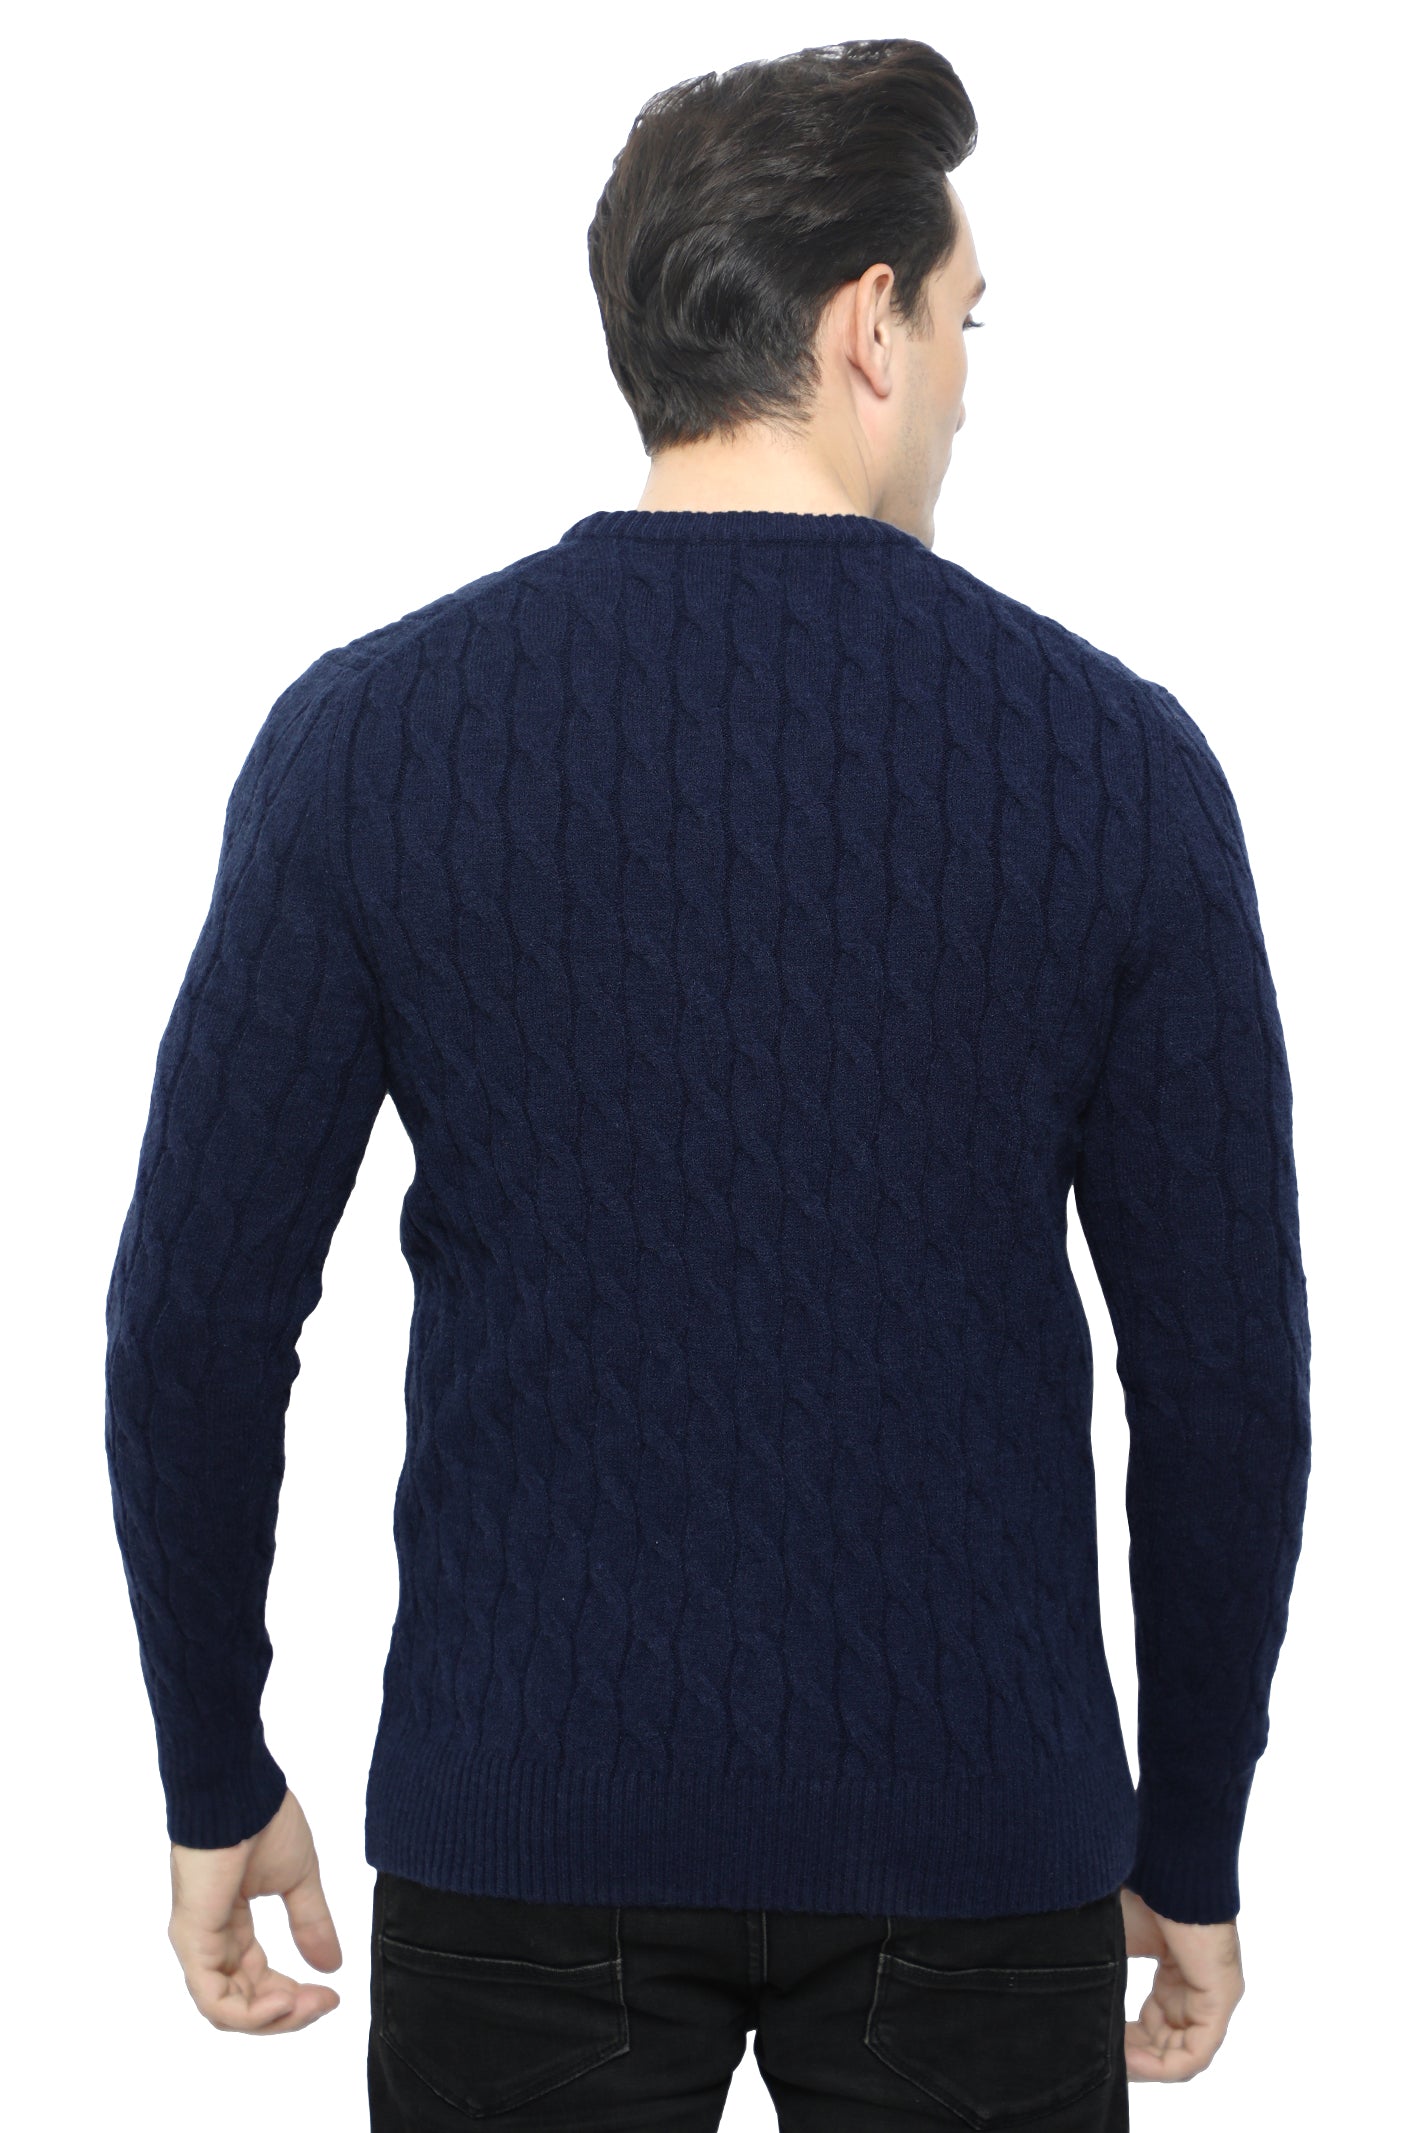 Gents Sweater In N-Blue SKU: SA567-N-BLUE - Diners